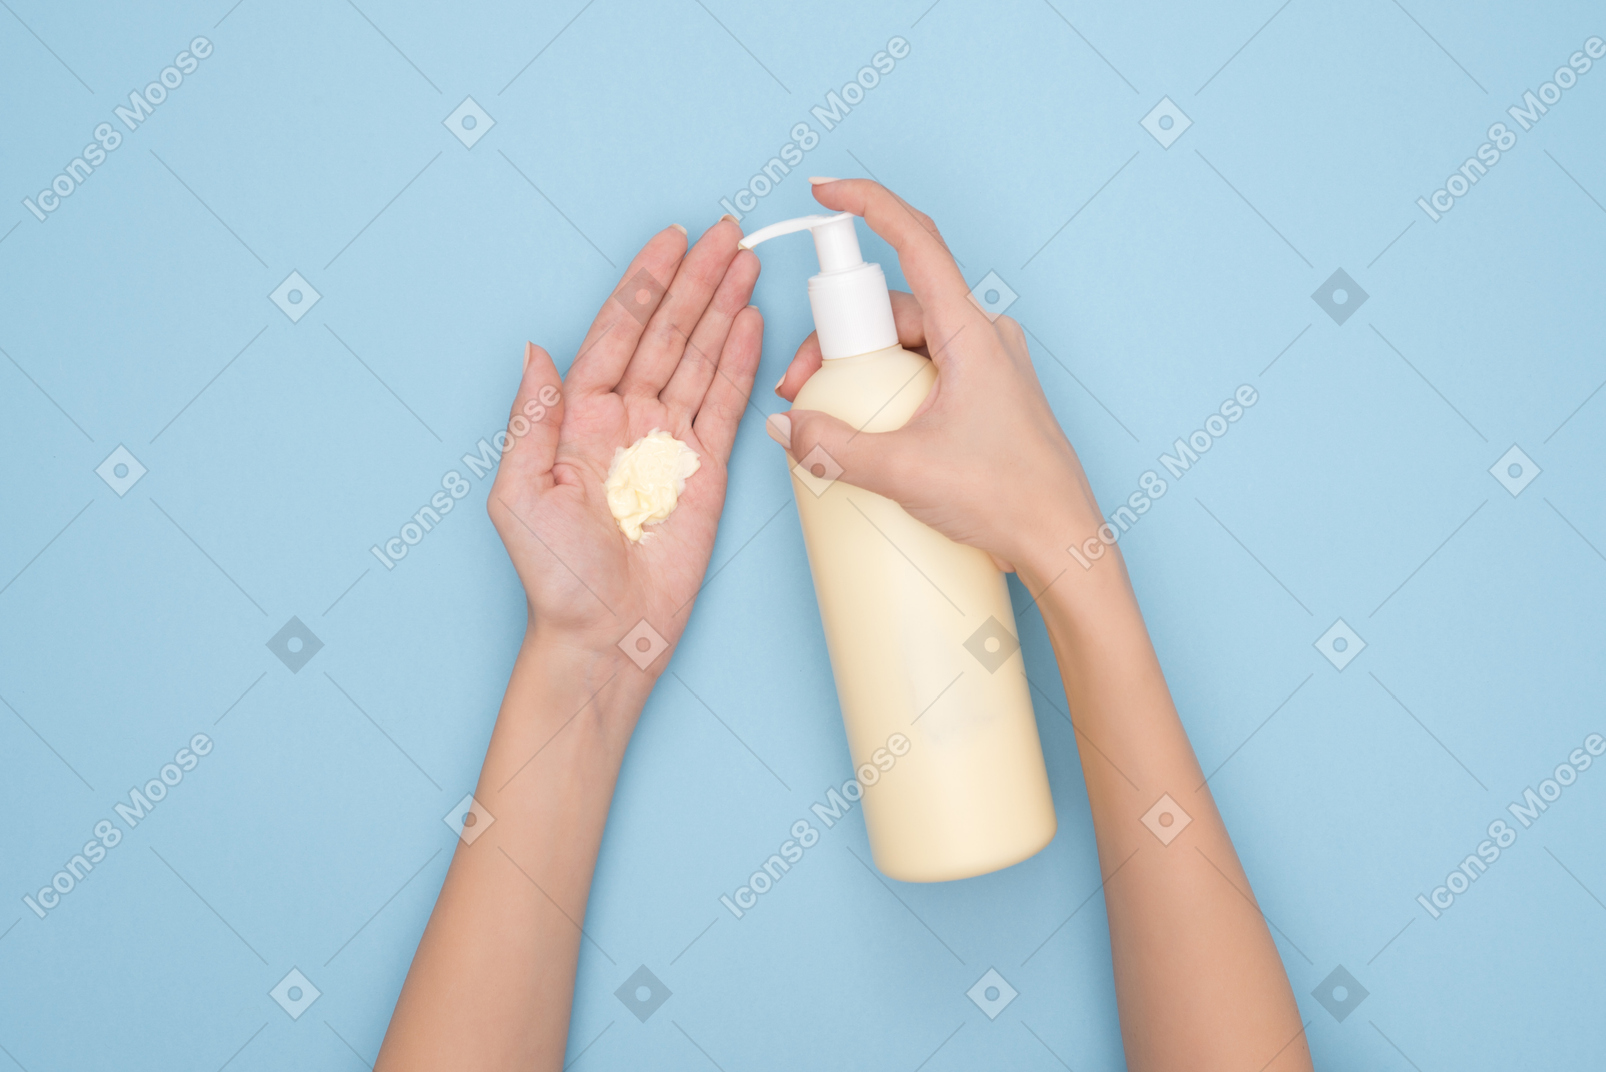 Applying nourishing cream to hands